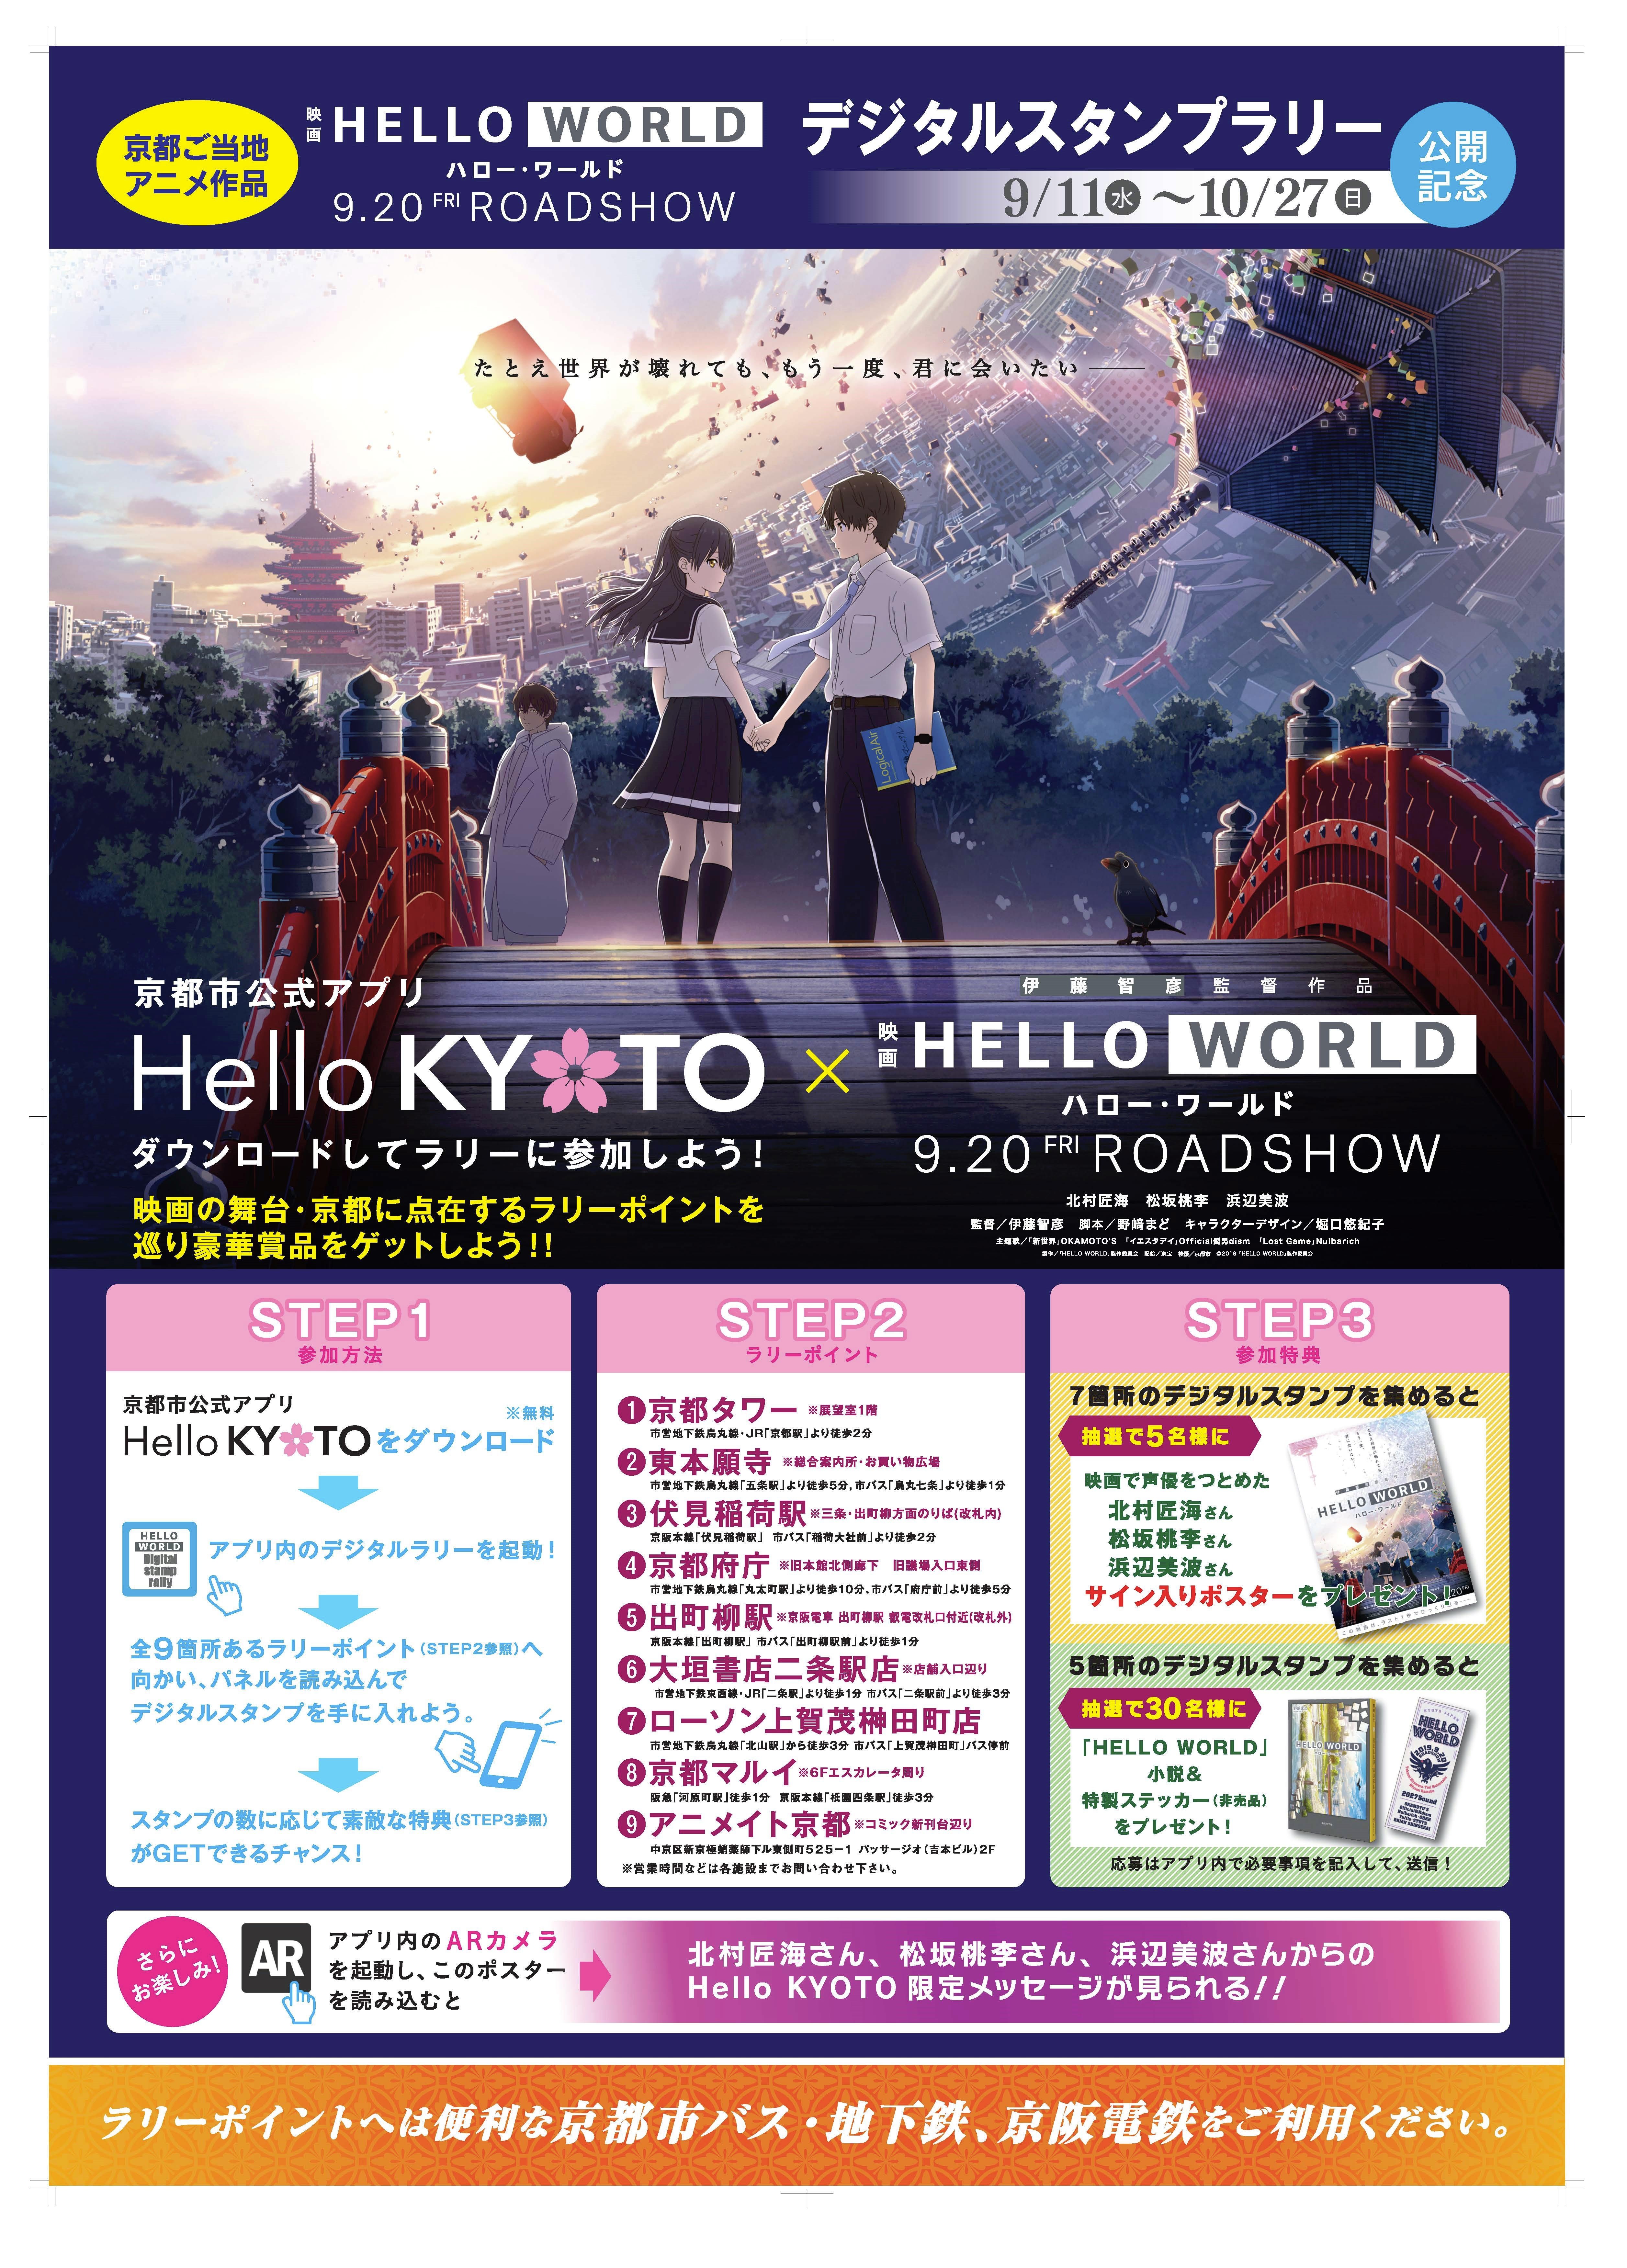 京都が舞台のアニメ映画「HELLO WORLD」とのコラボレーション企画